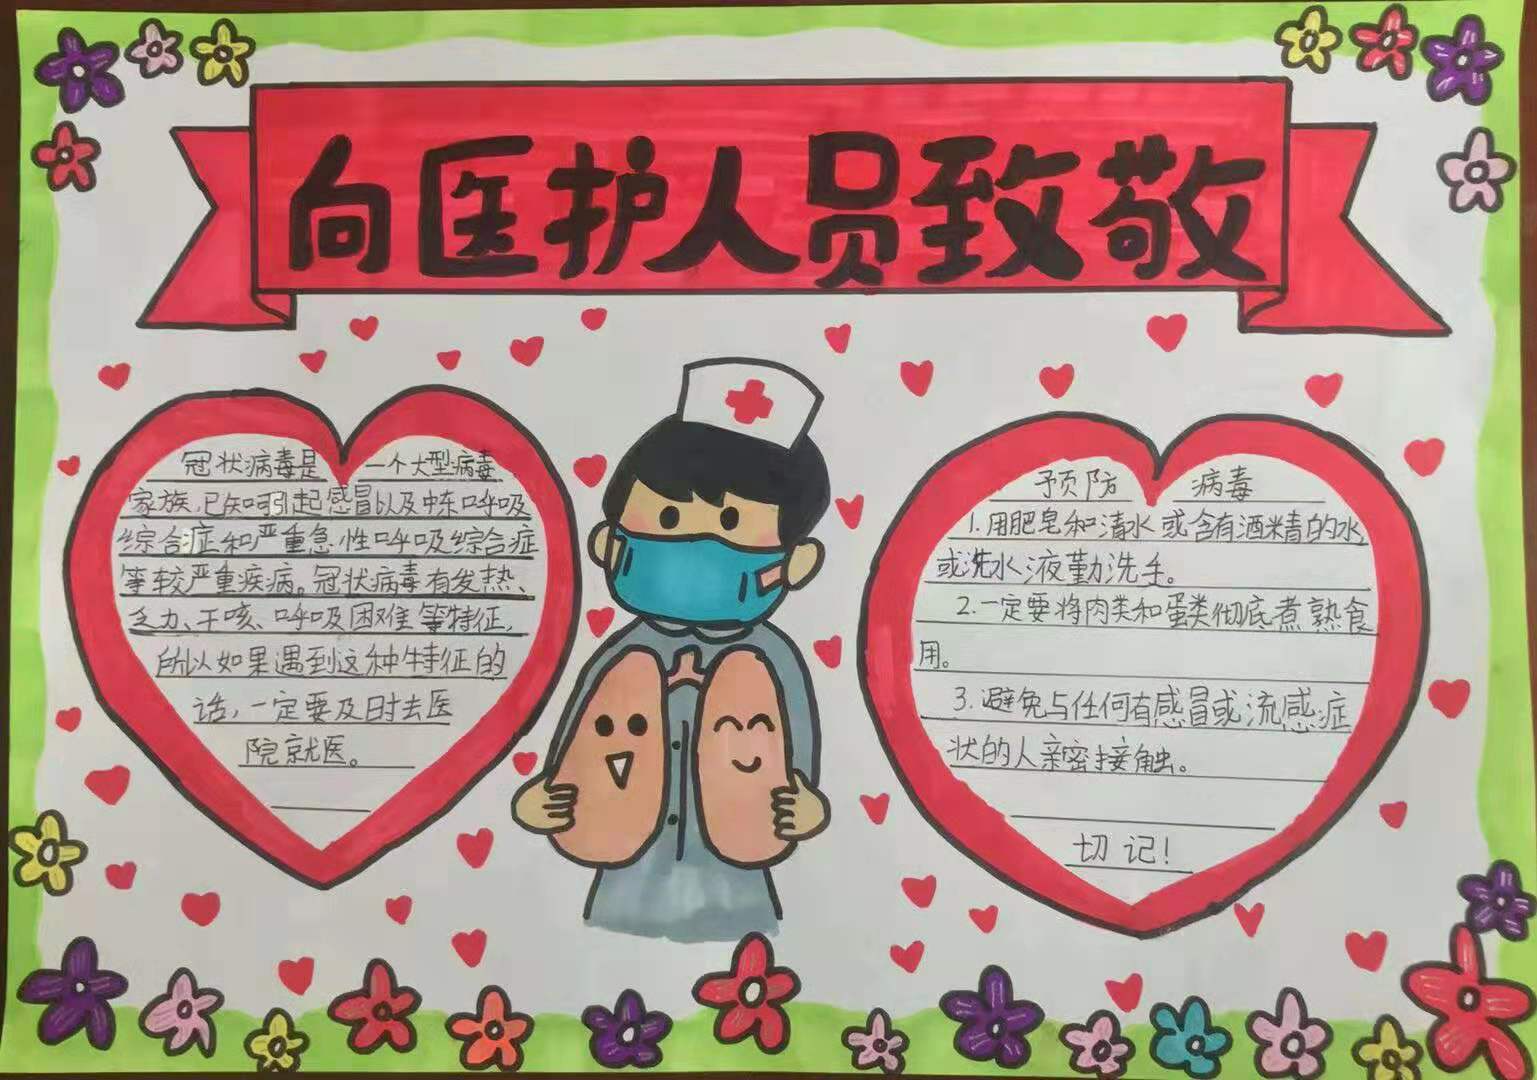 中塔口小学学生制作手抄报为武汉加油